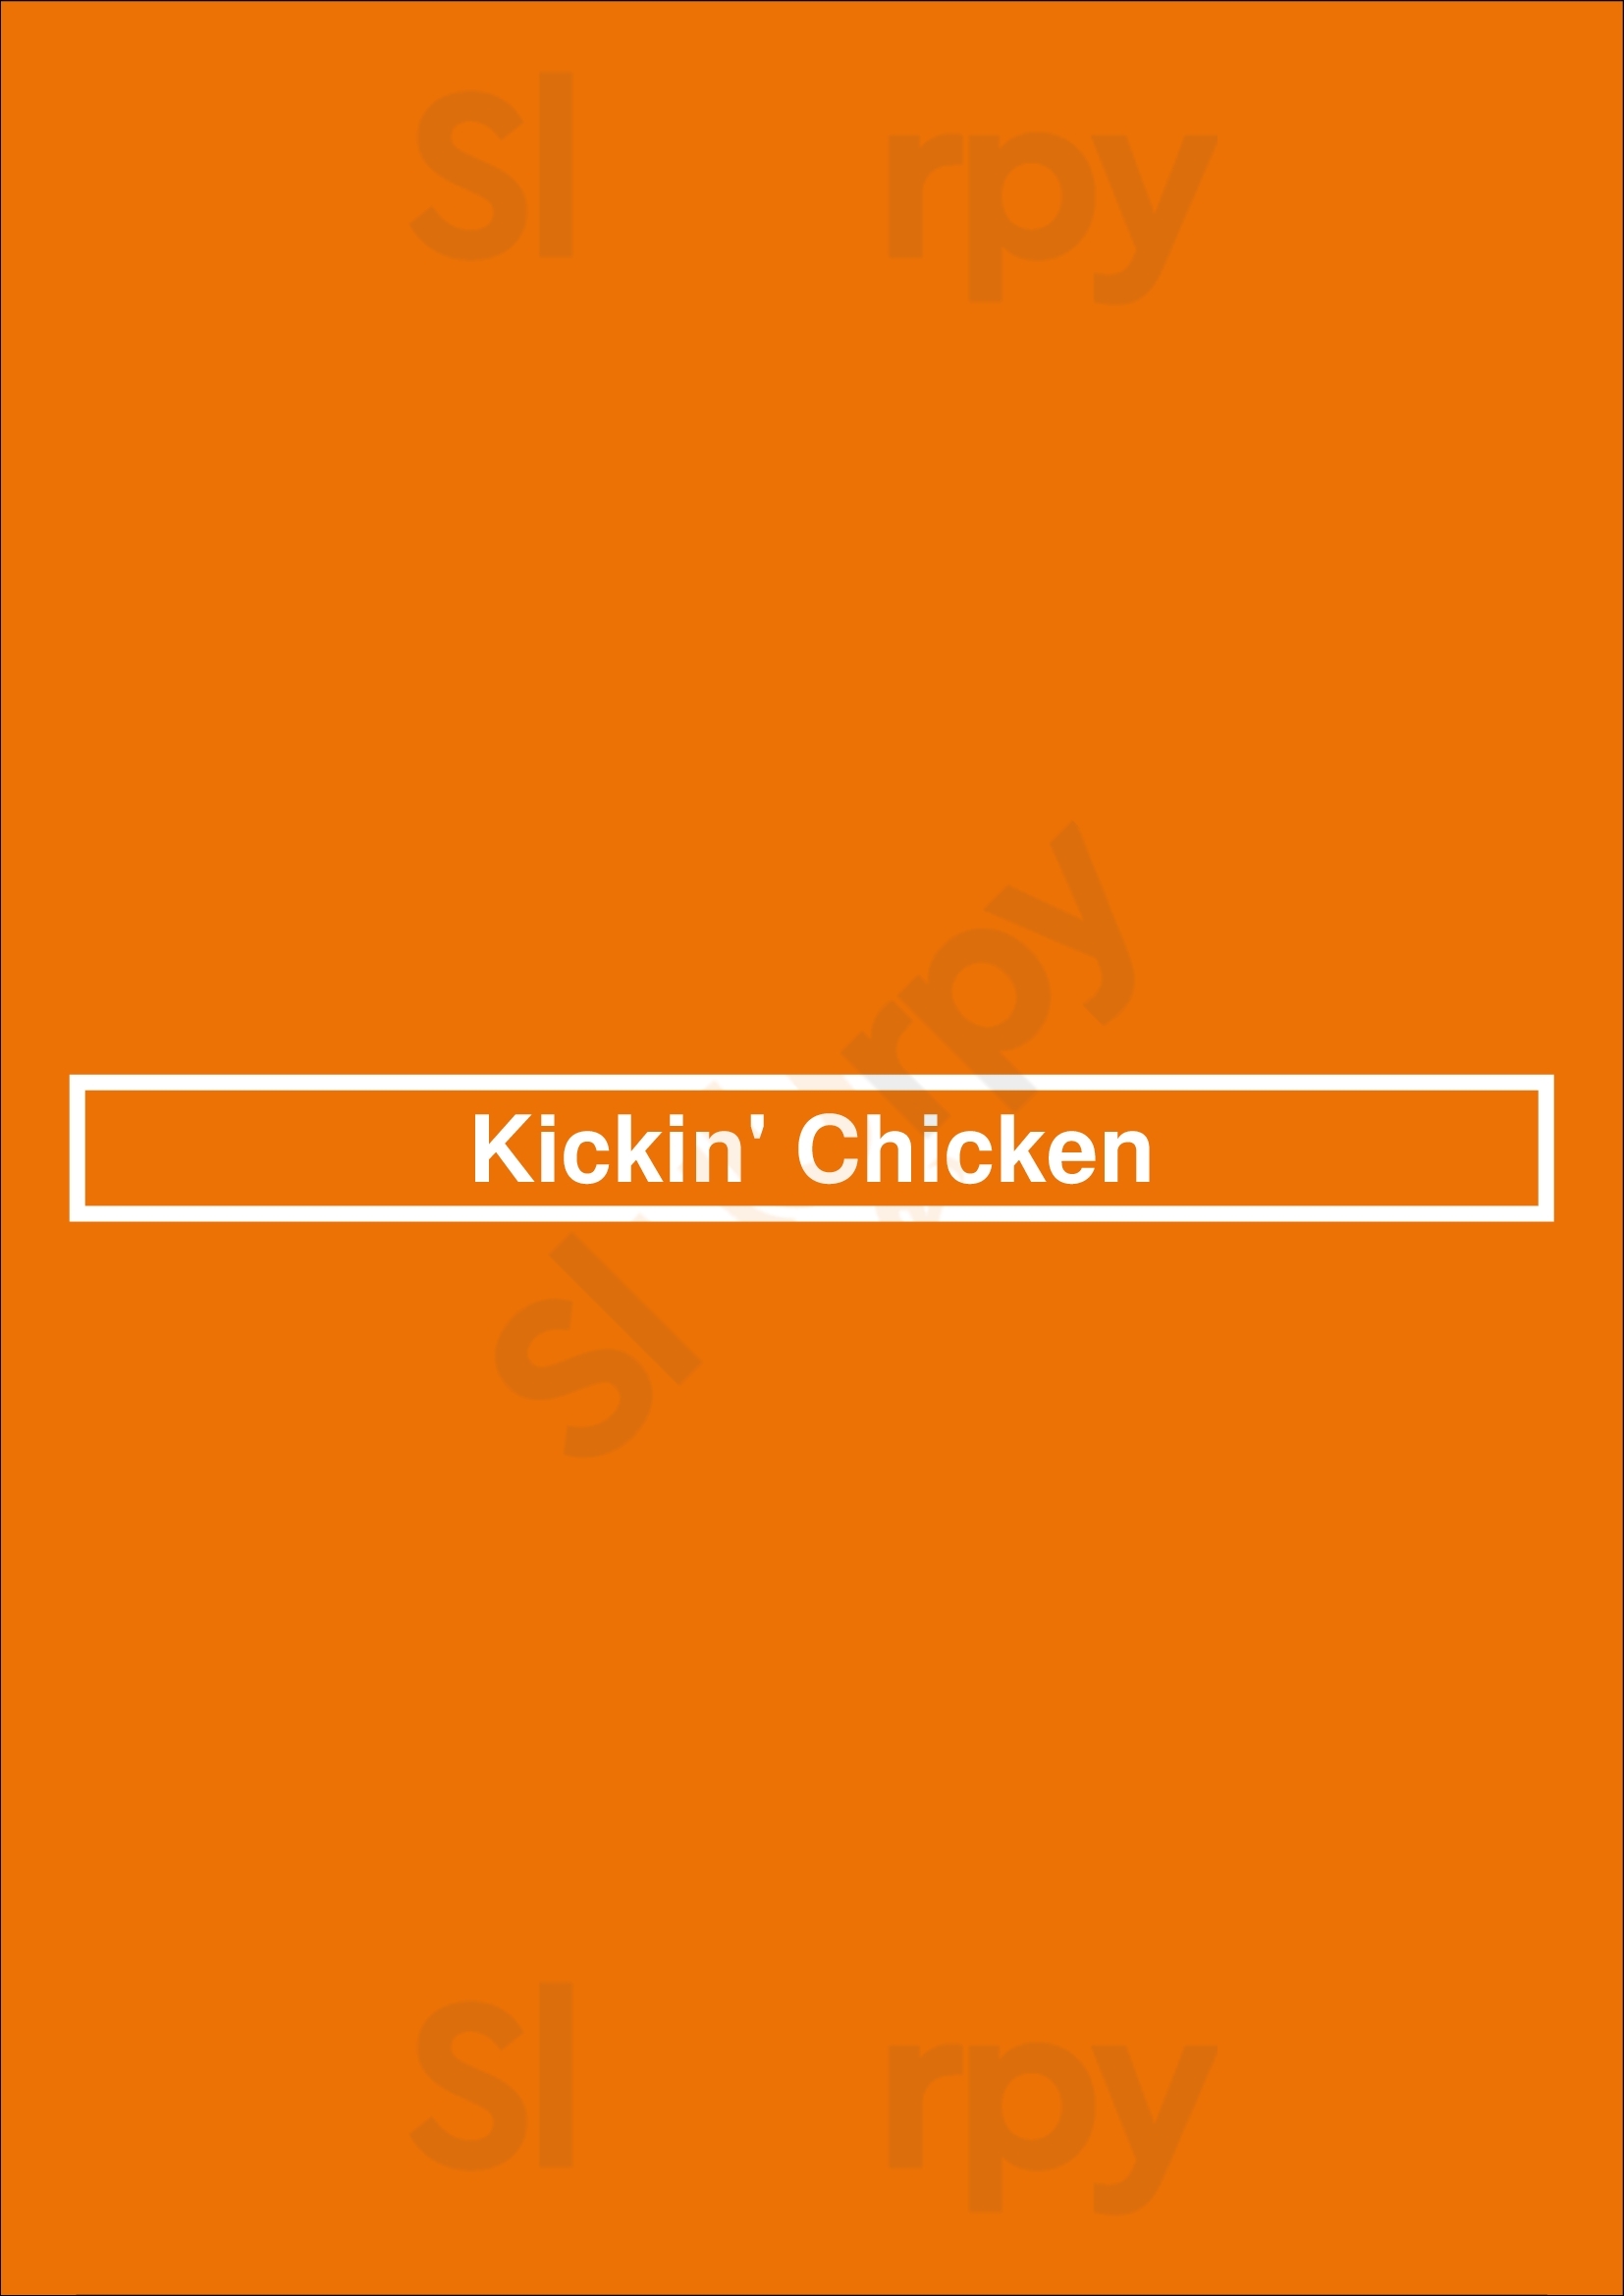 Kickin' Chicken London Menu - 1